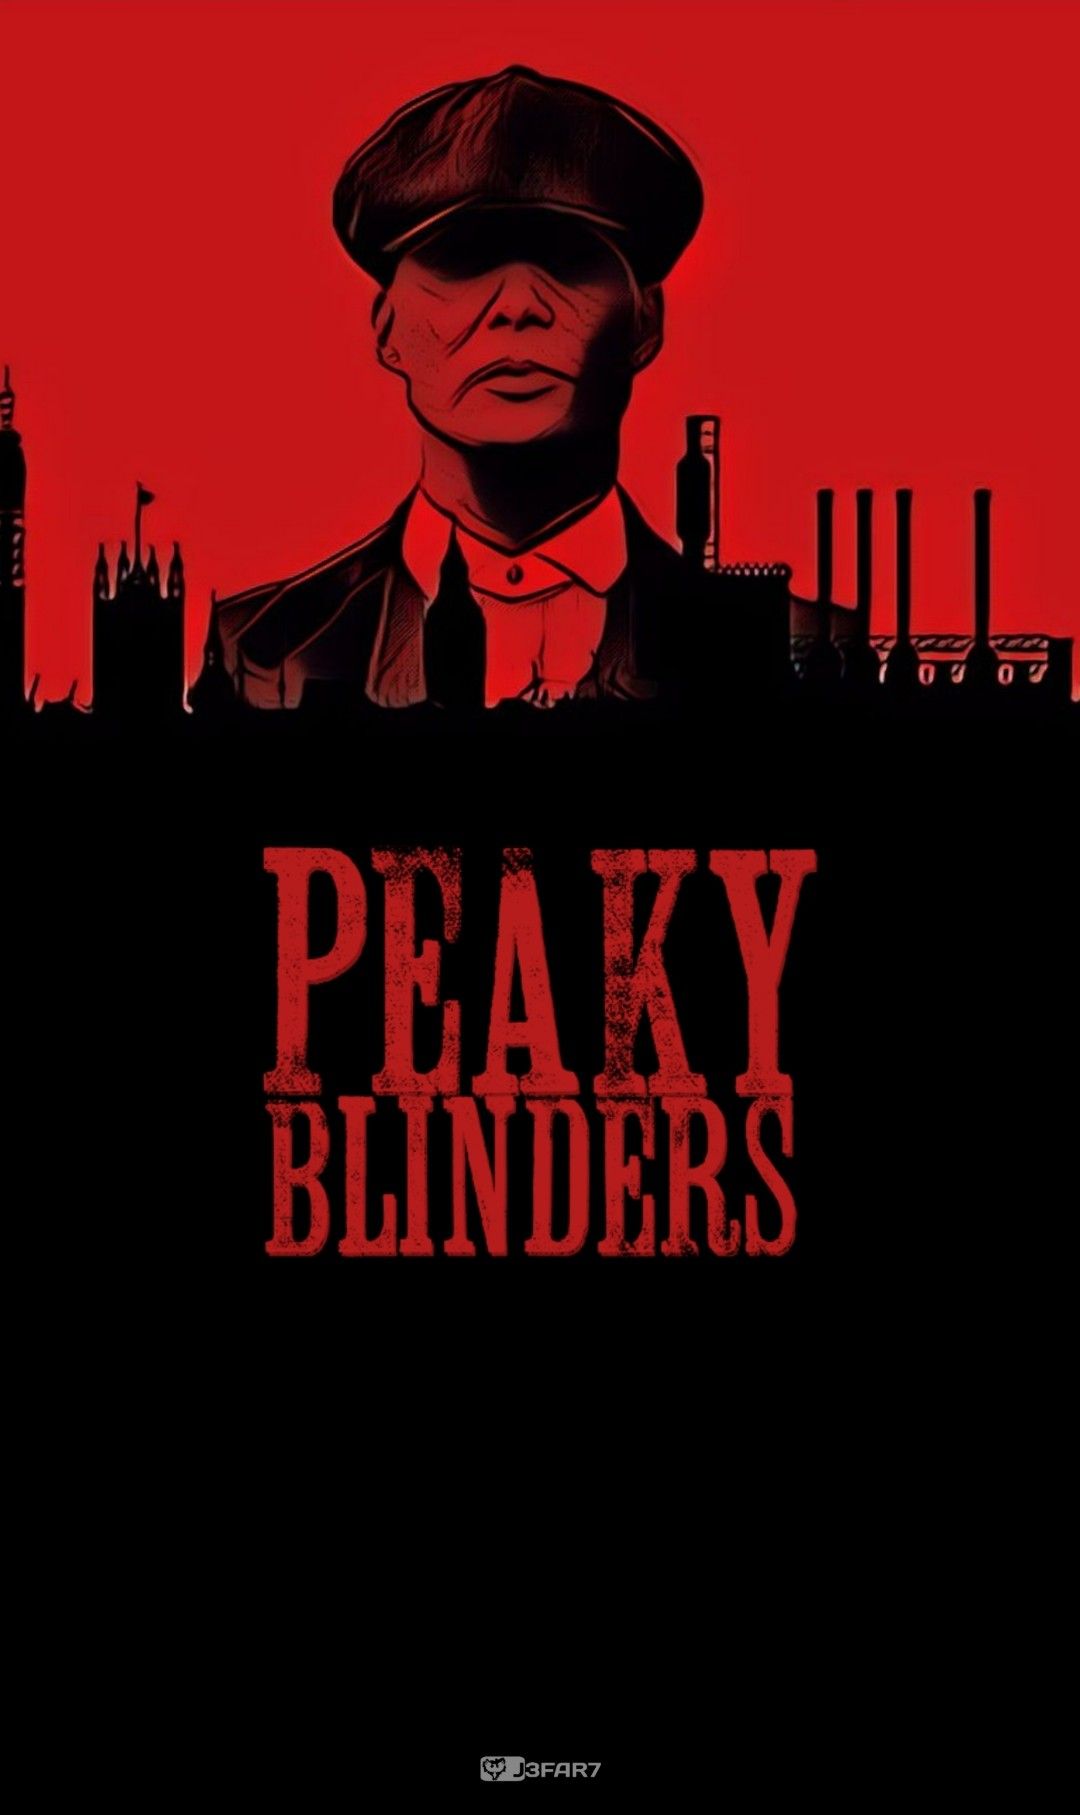 Peaky Blinders Wallpaper 1920x108 Peaky Blinders Wallpaper Peaky Blinders Poster Kulturaupice 